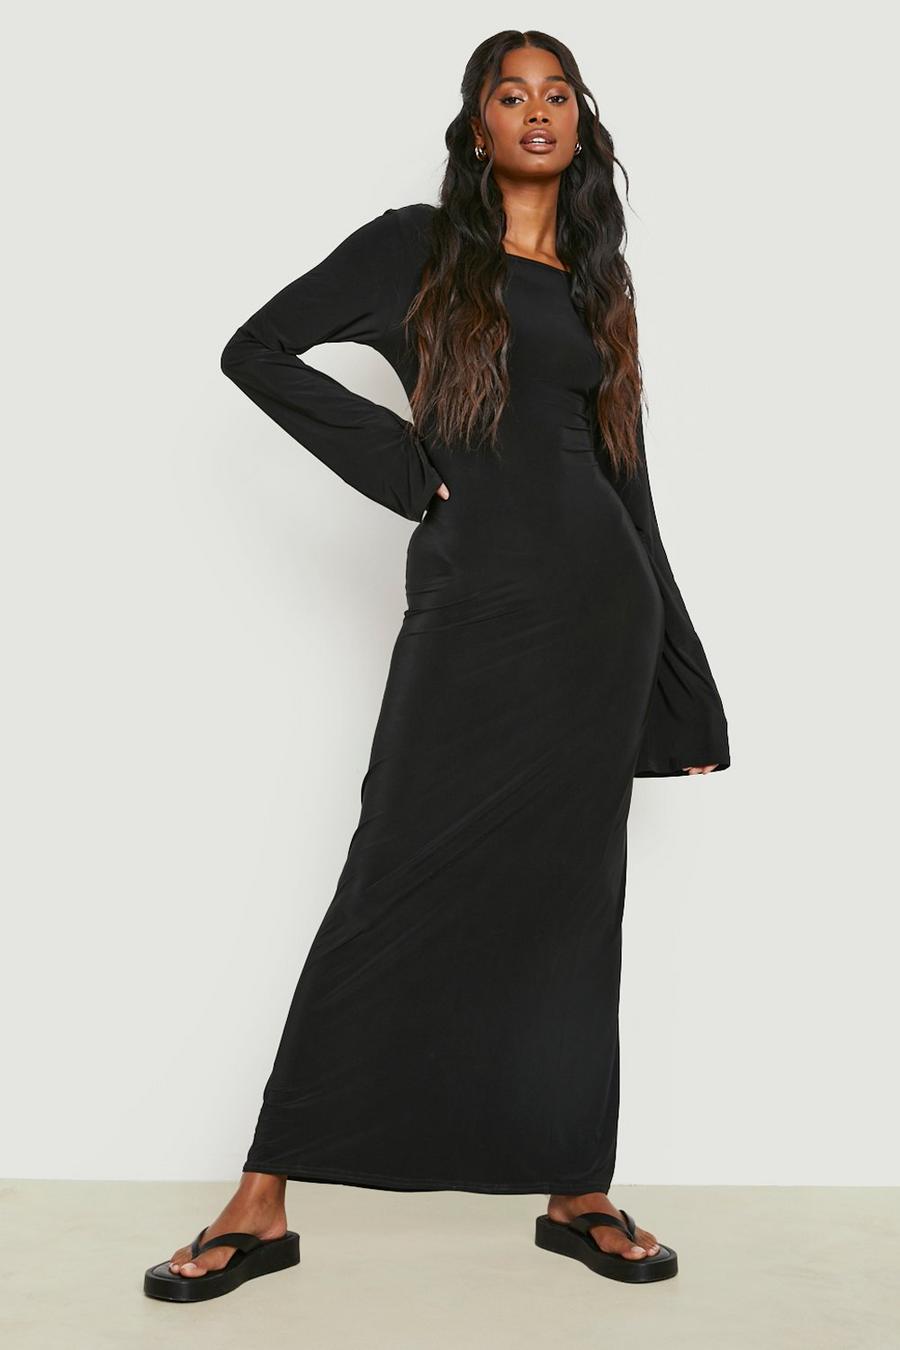 Black שמלת מקסי מבד רך עבה עם גב נמוך